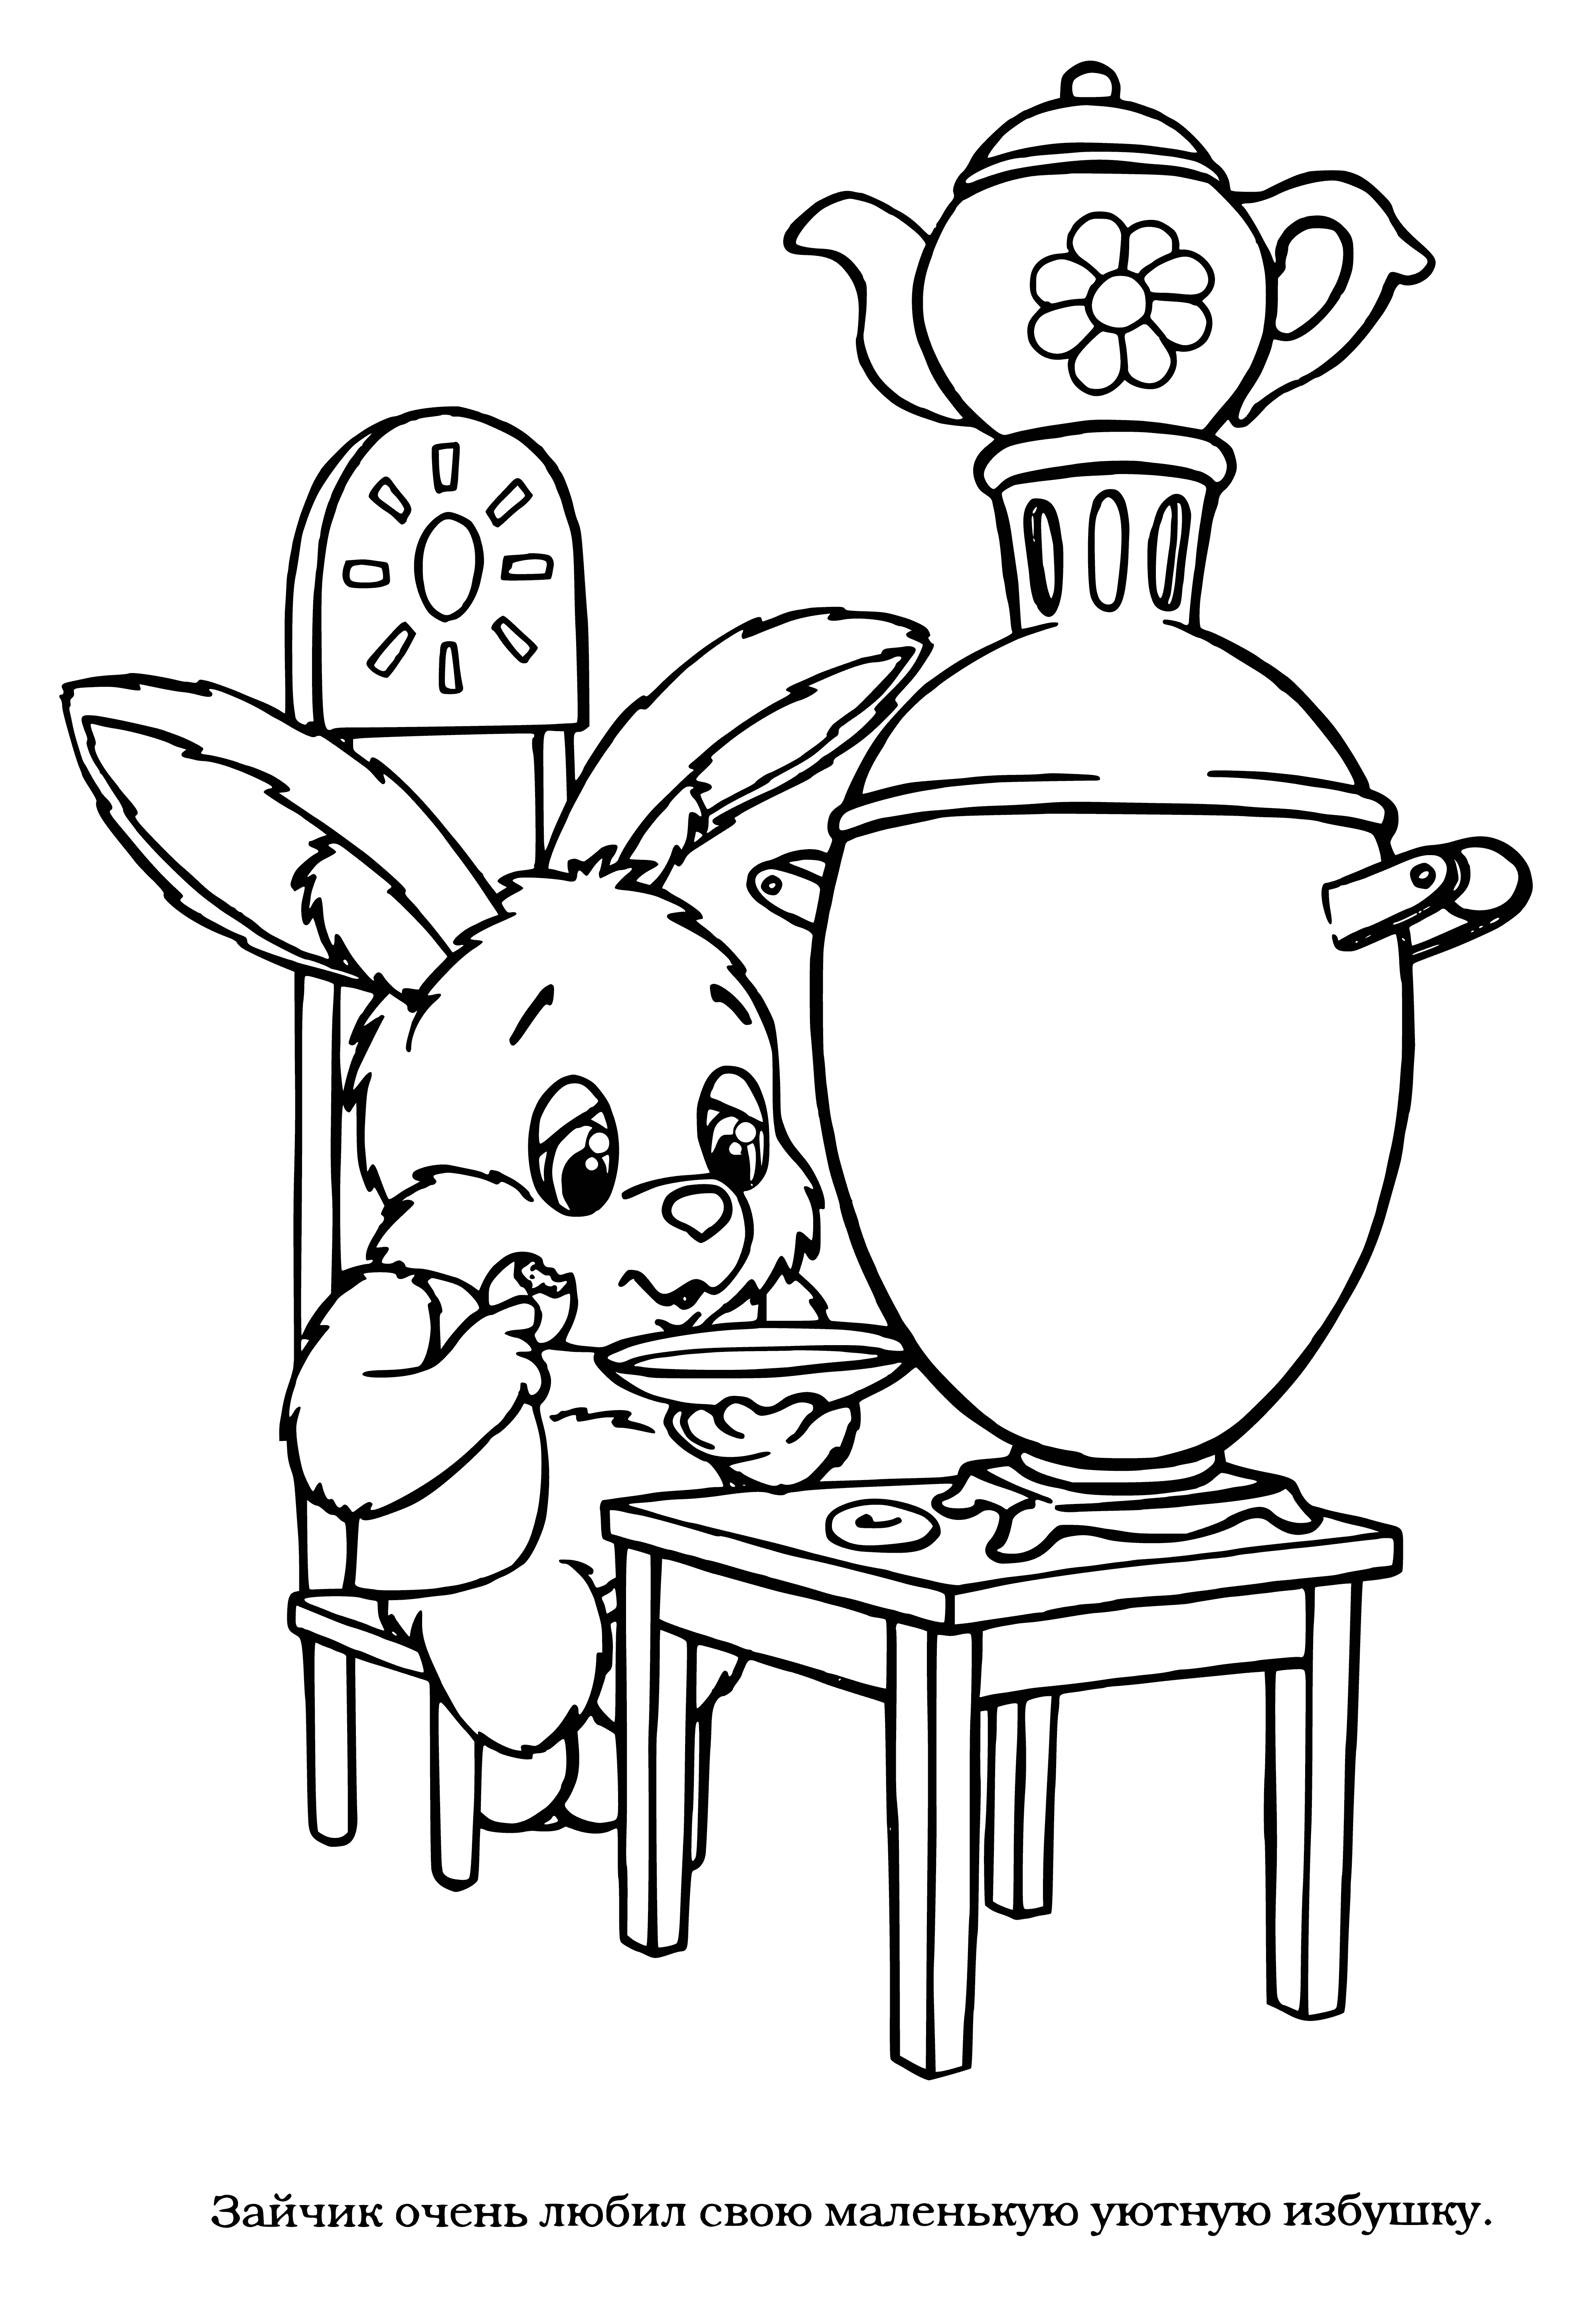 semaverde tavşan boyama sayfası